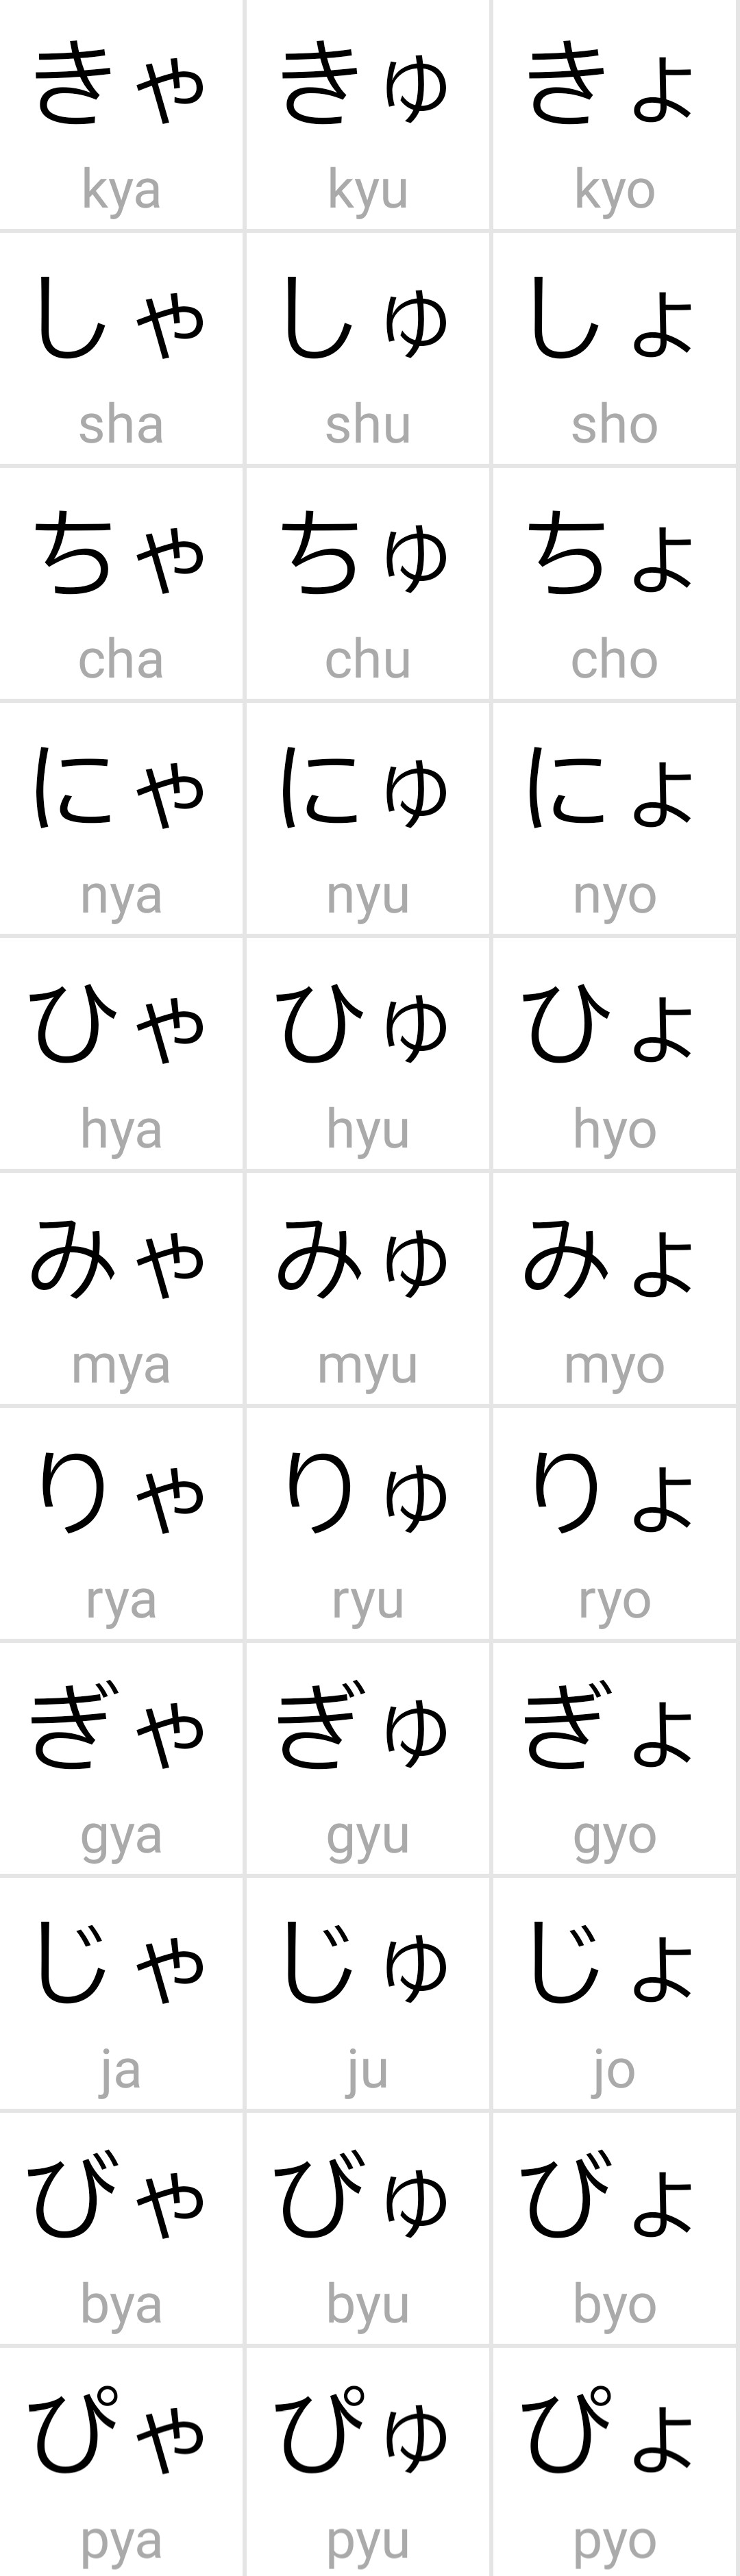 一个日语小白也能看懂的五十音图教学第三期